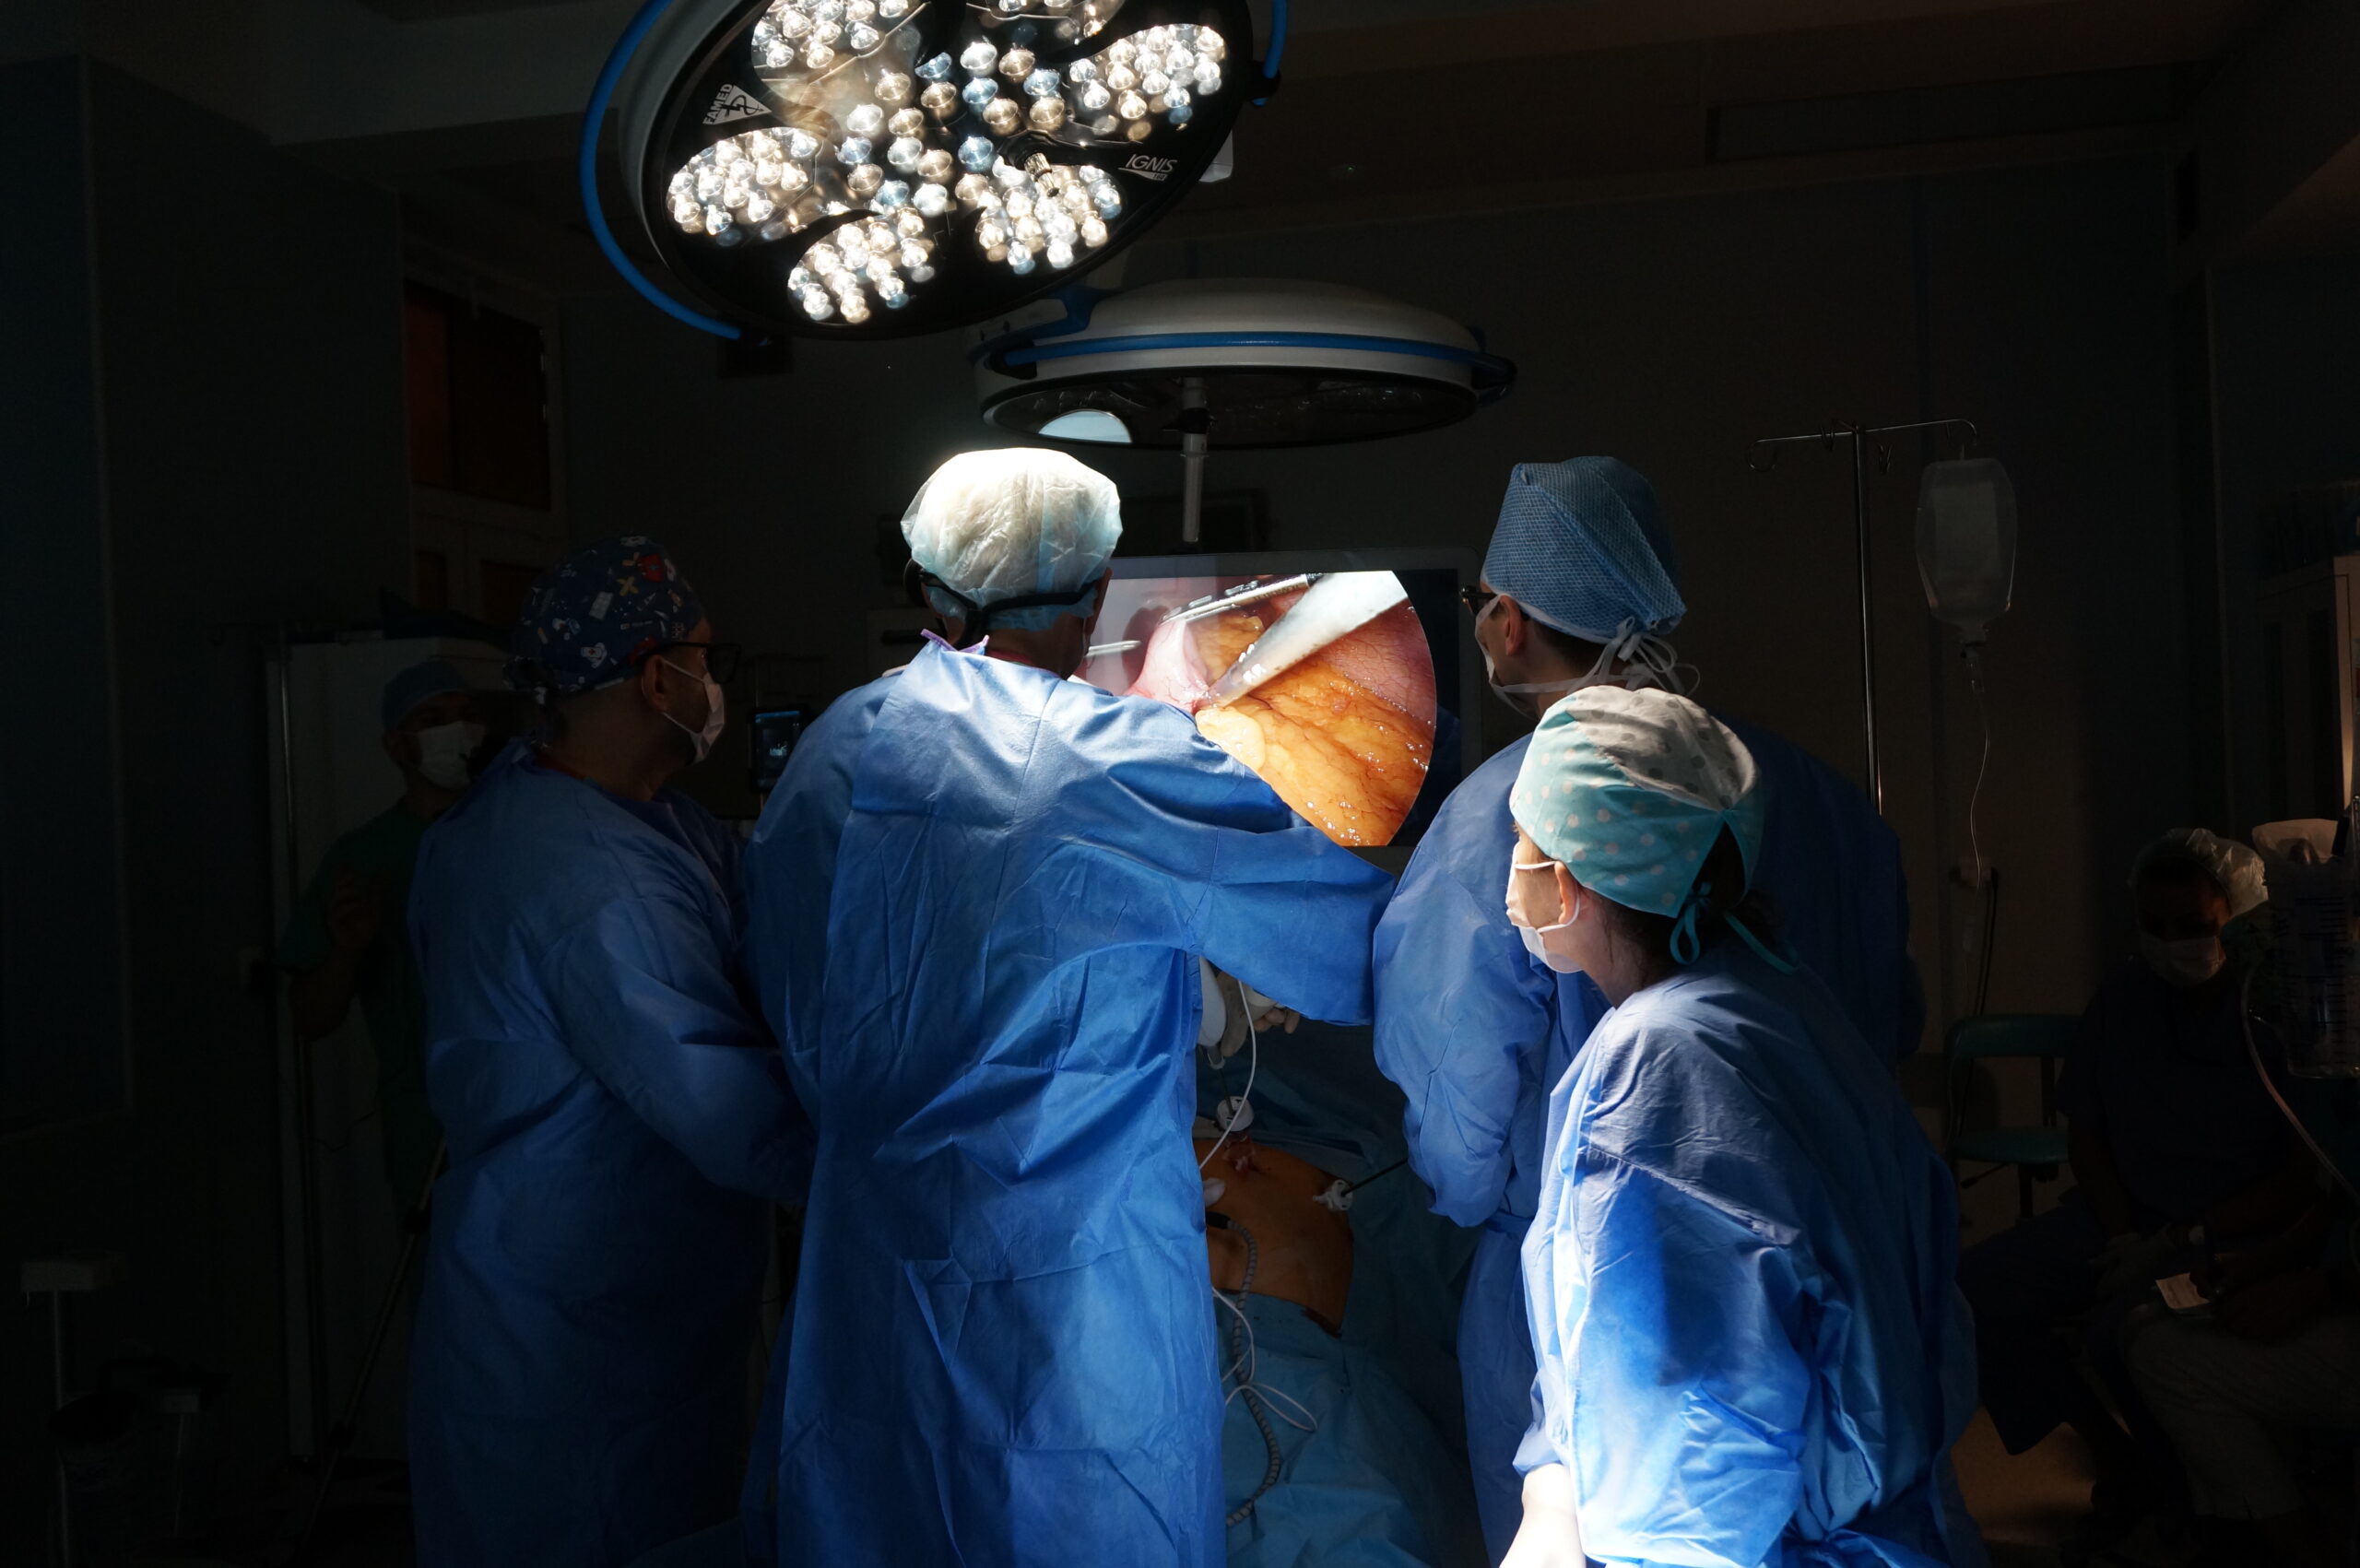 Operacja laparoskopowa resekcji żołądka